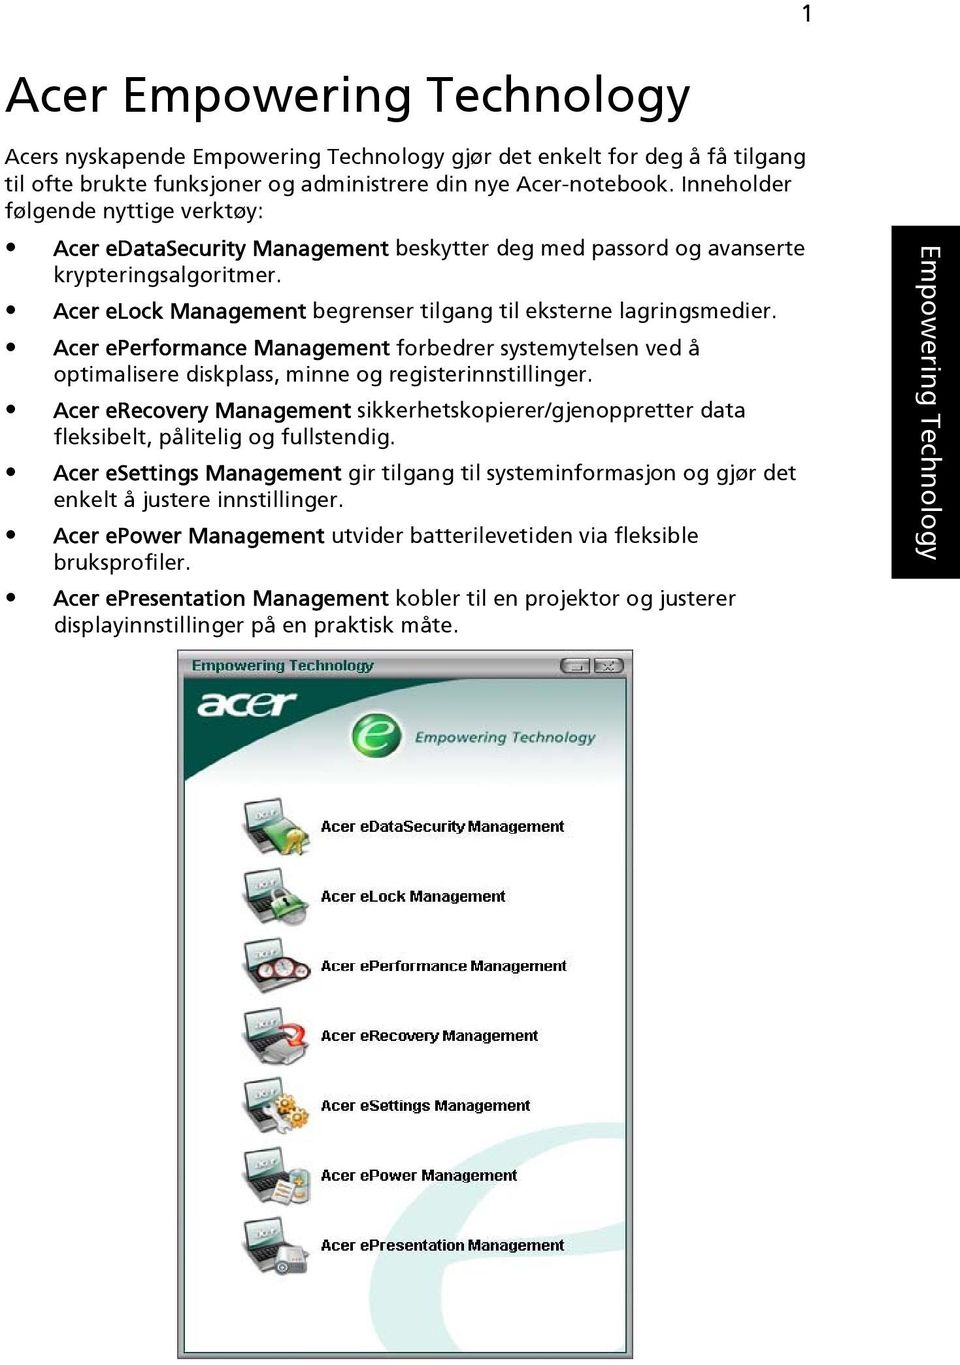 Acer eperformance Management forbedrer systemytelsen ved å optimalisere diskplass, minne og registerinnstillinger.